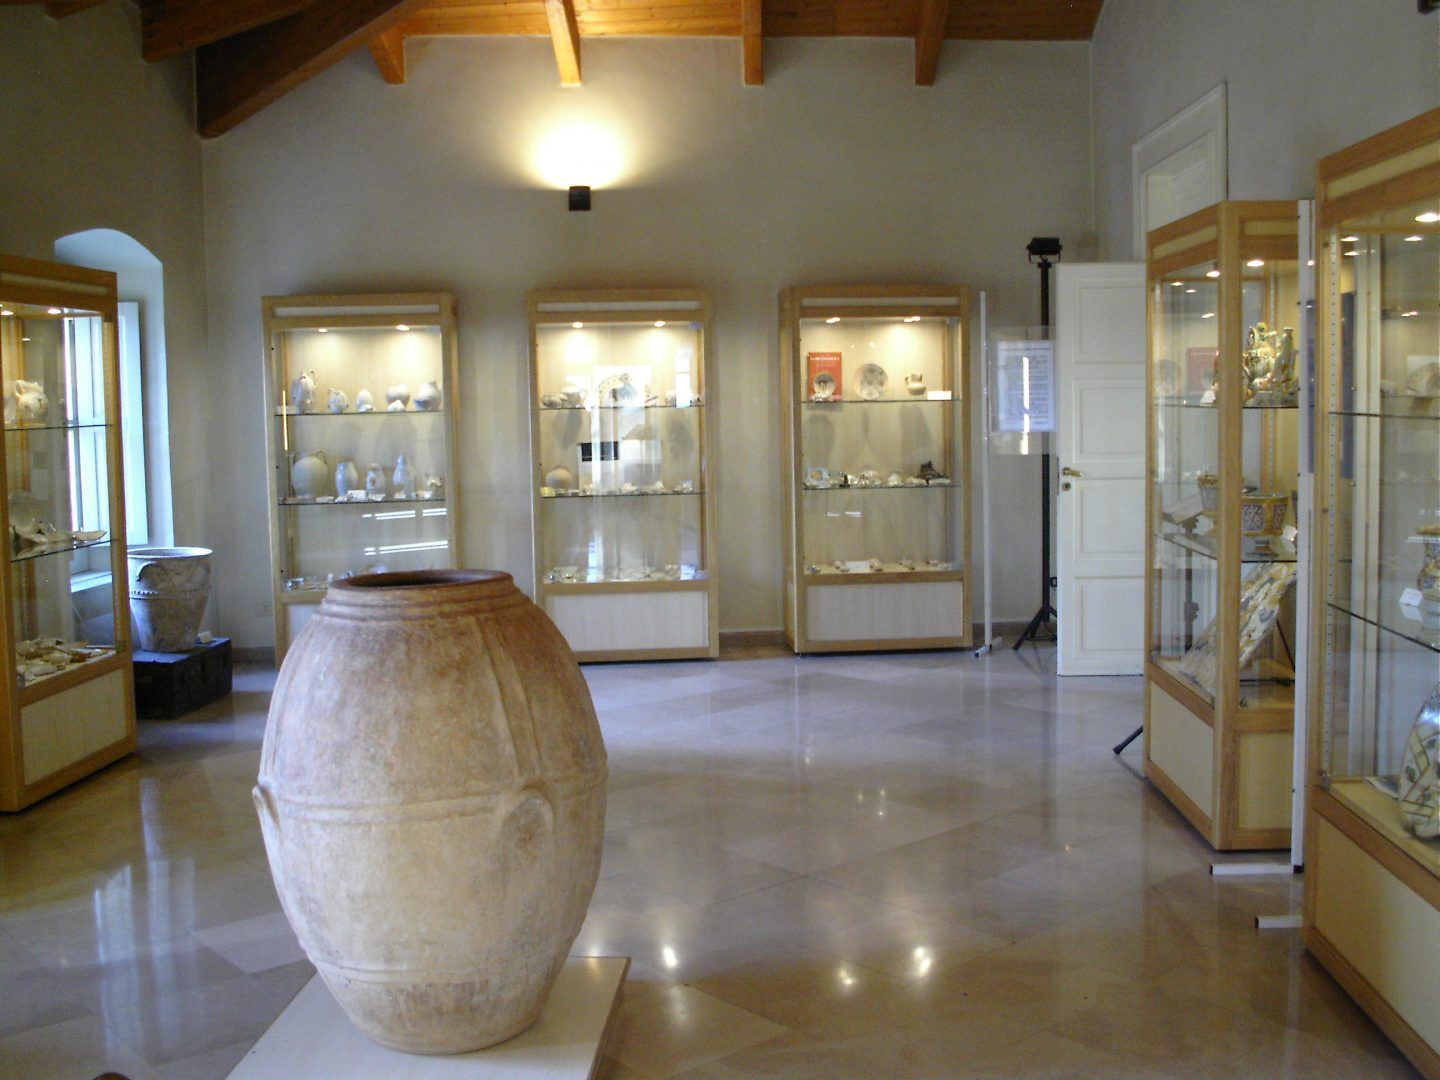 Museo Civico di Ariano Irpino